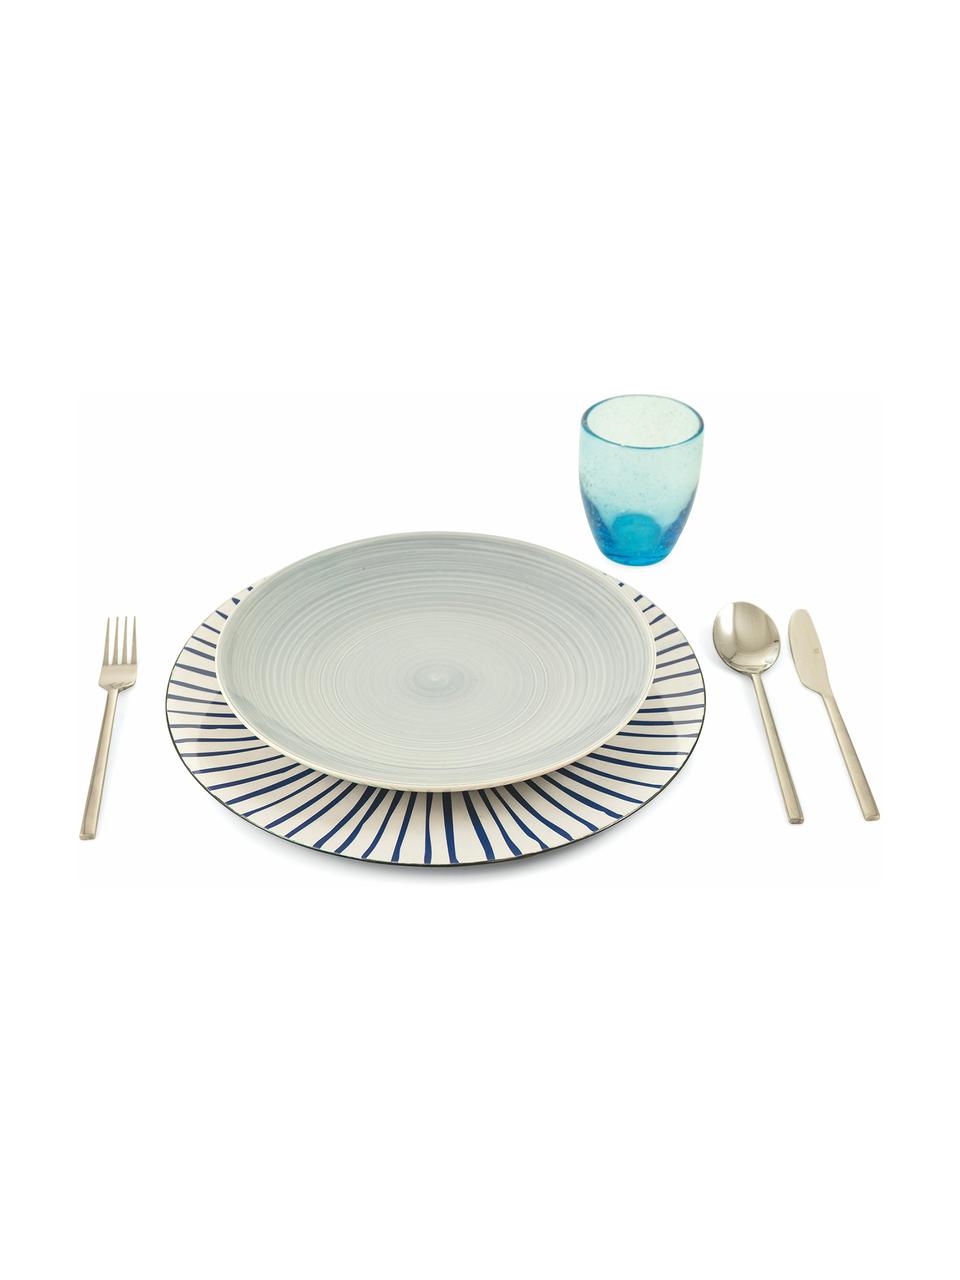 Kunststoff-Platzteller Marea mit bunten Designs, 6er-Set, Kunststoff, Blau, Weiß, Gelb, Grün, Orange, Ø 33 cm